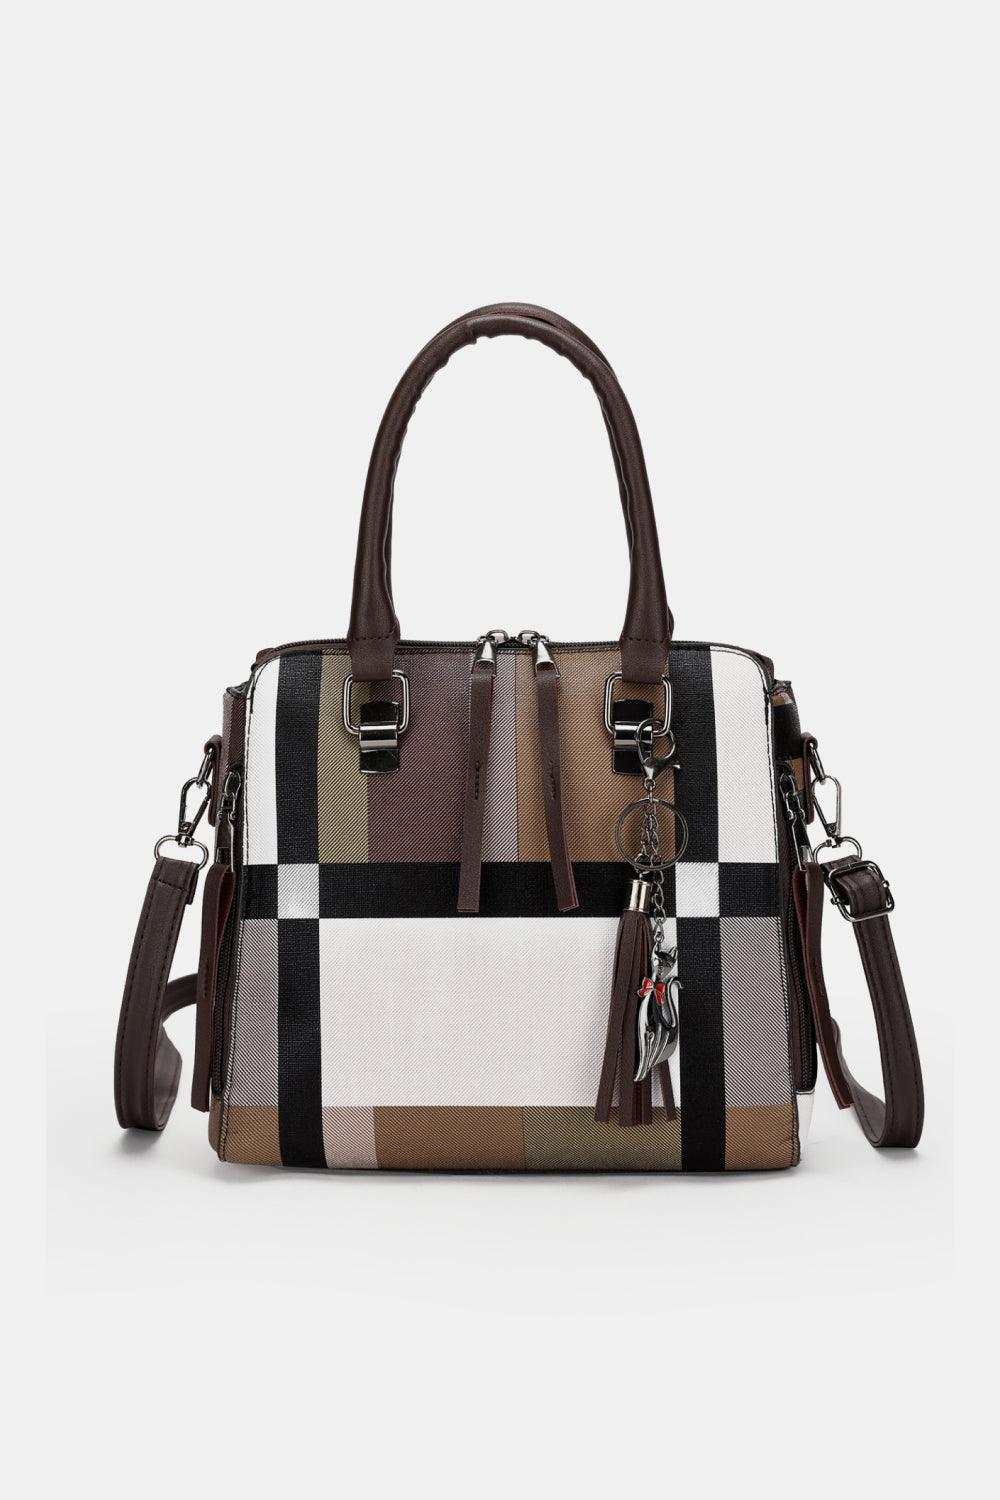 Luxurious 4-Piece Color Block PU Leather Women Bag Set - MXSTUDIO.COM